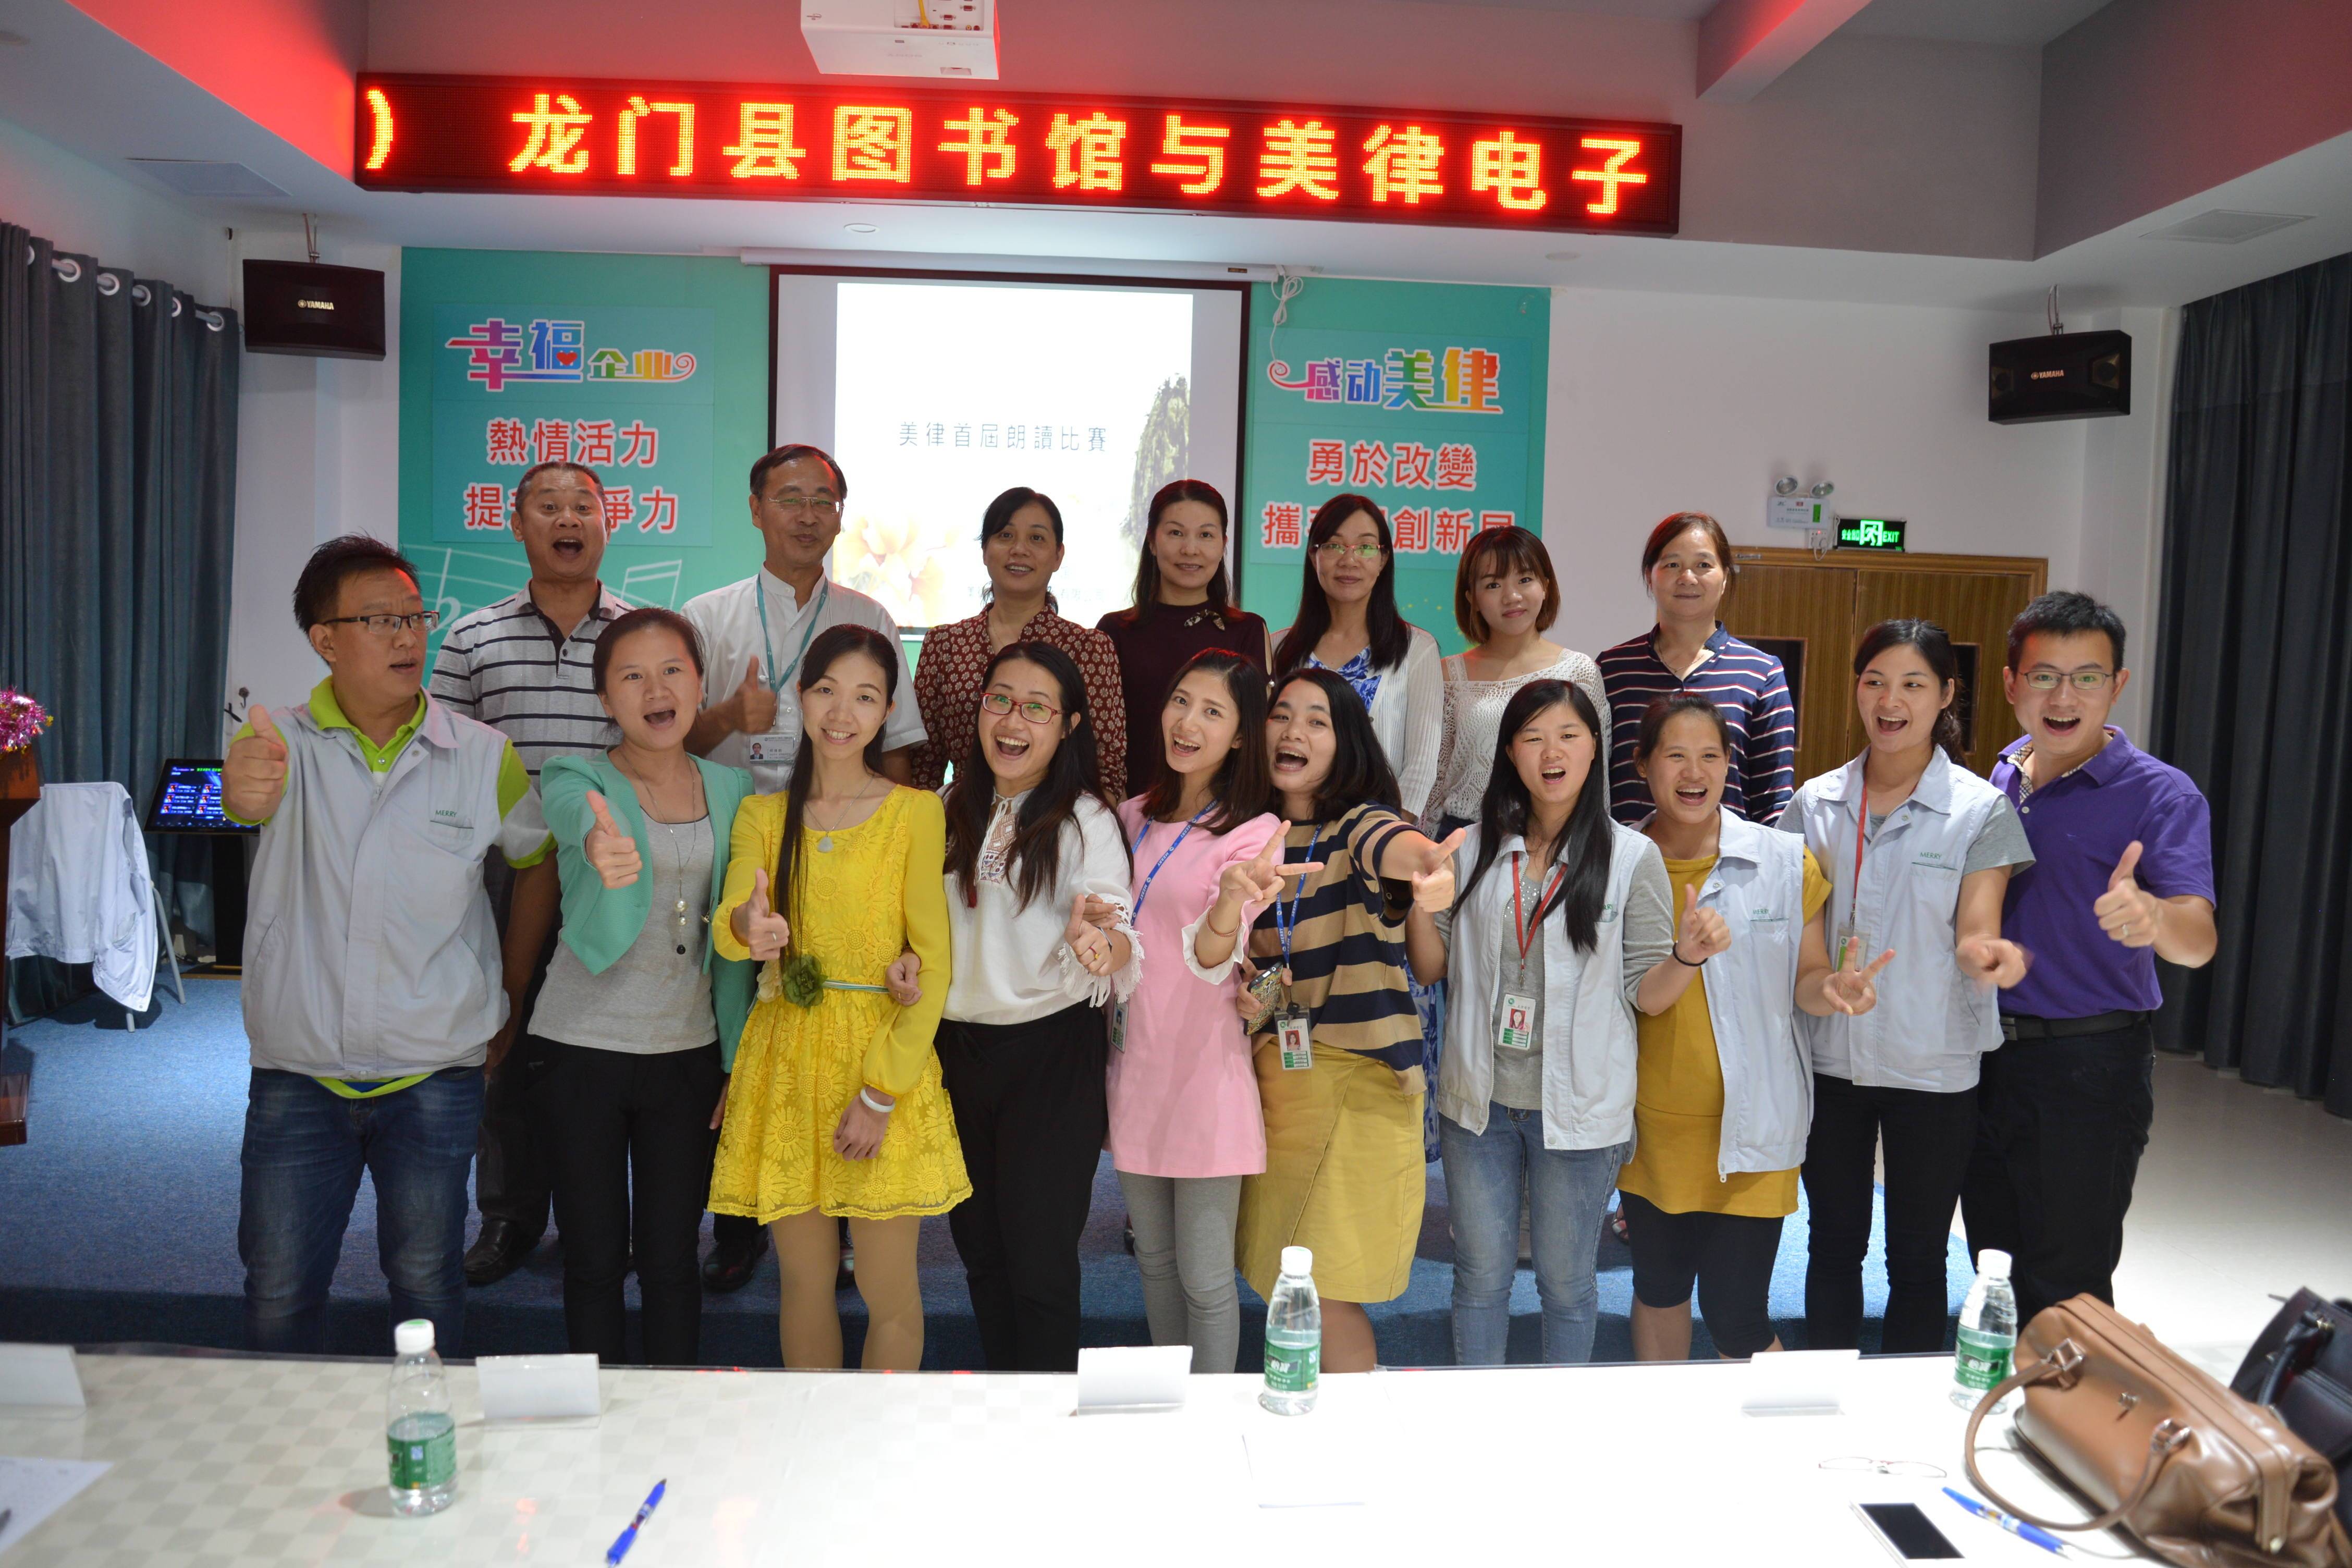 龙门县图书馆“2016年共建和谐幸福文化企业朗诵比赛活动”简讯